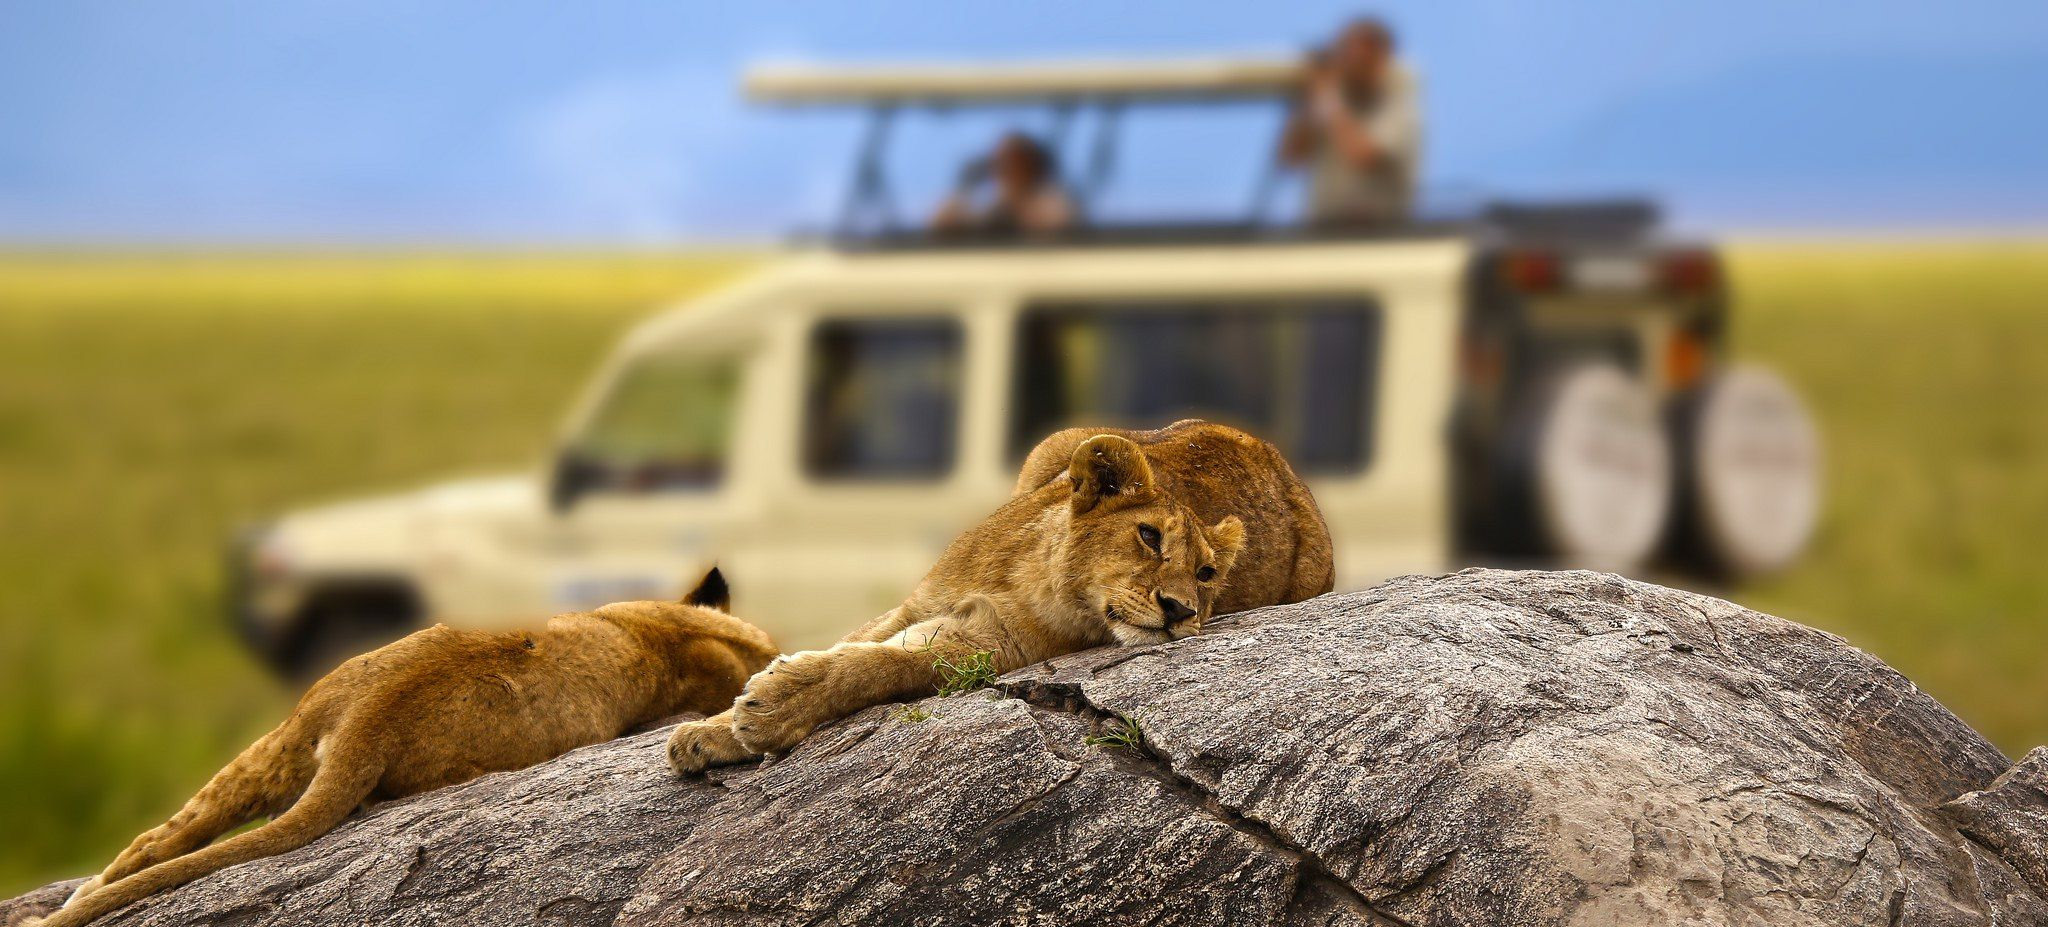 Serengeti national park 2021